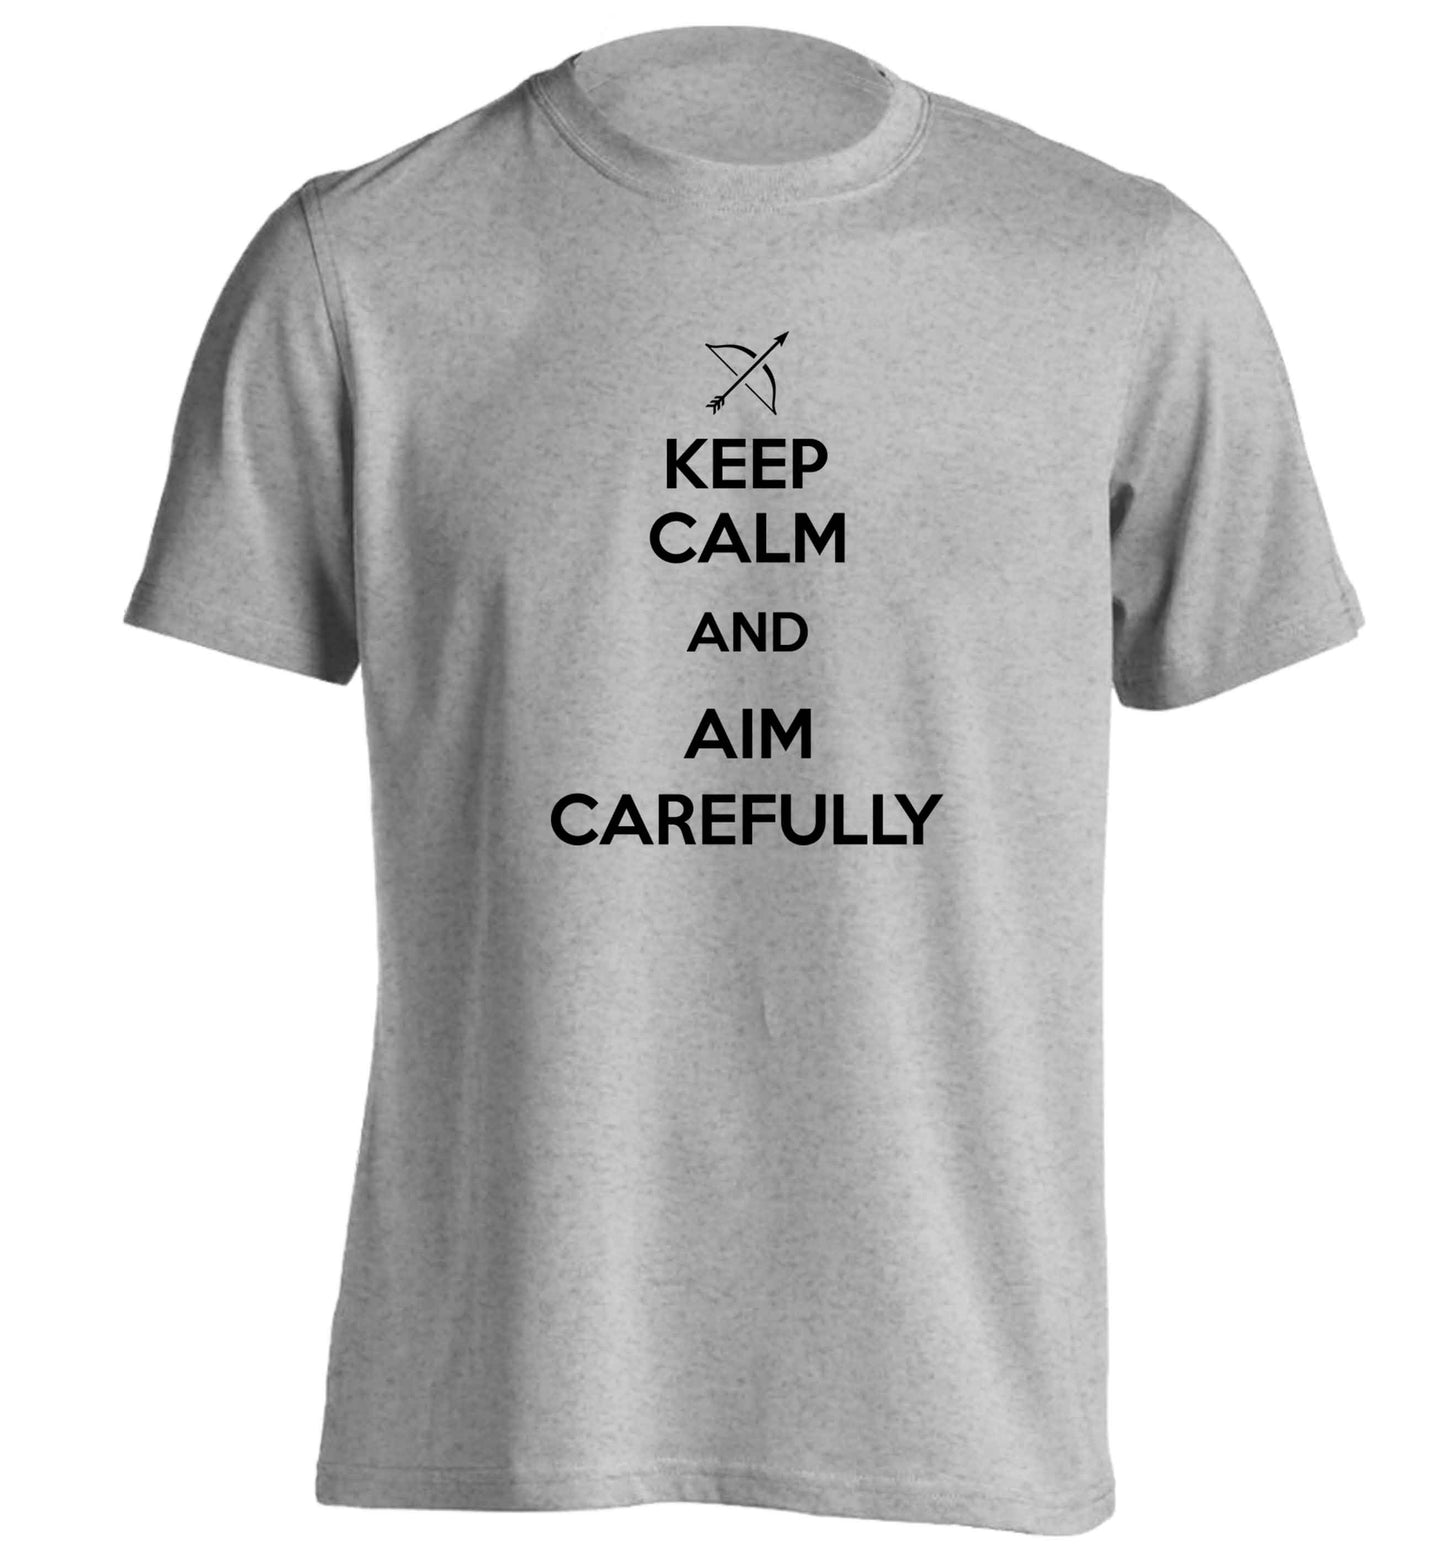 Keep calm and aim carefully adults unisex grey Tshirt 2XL